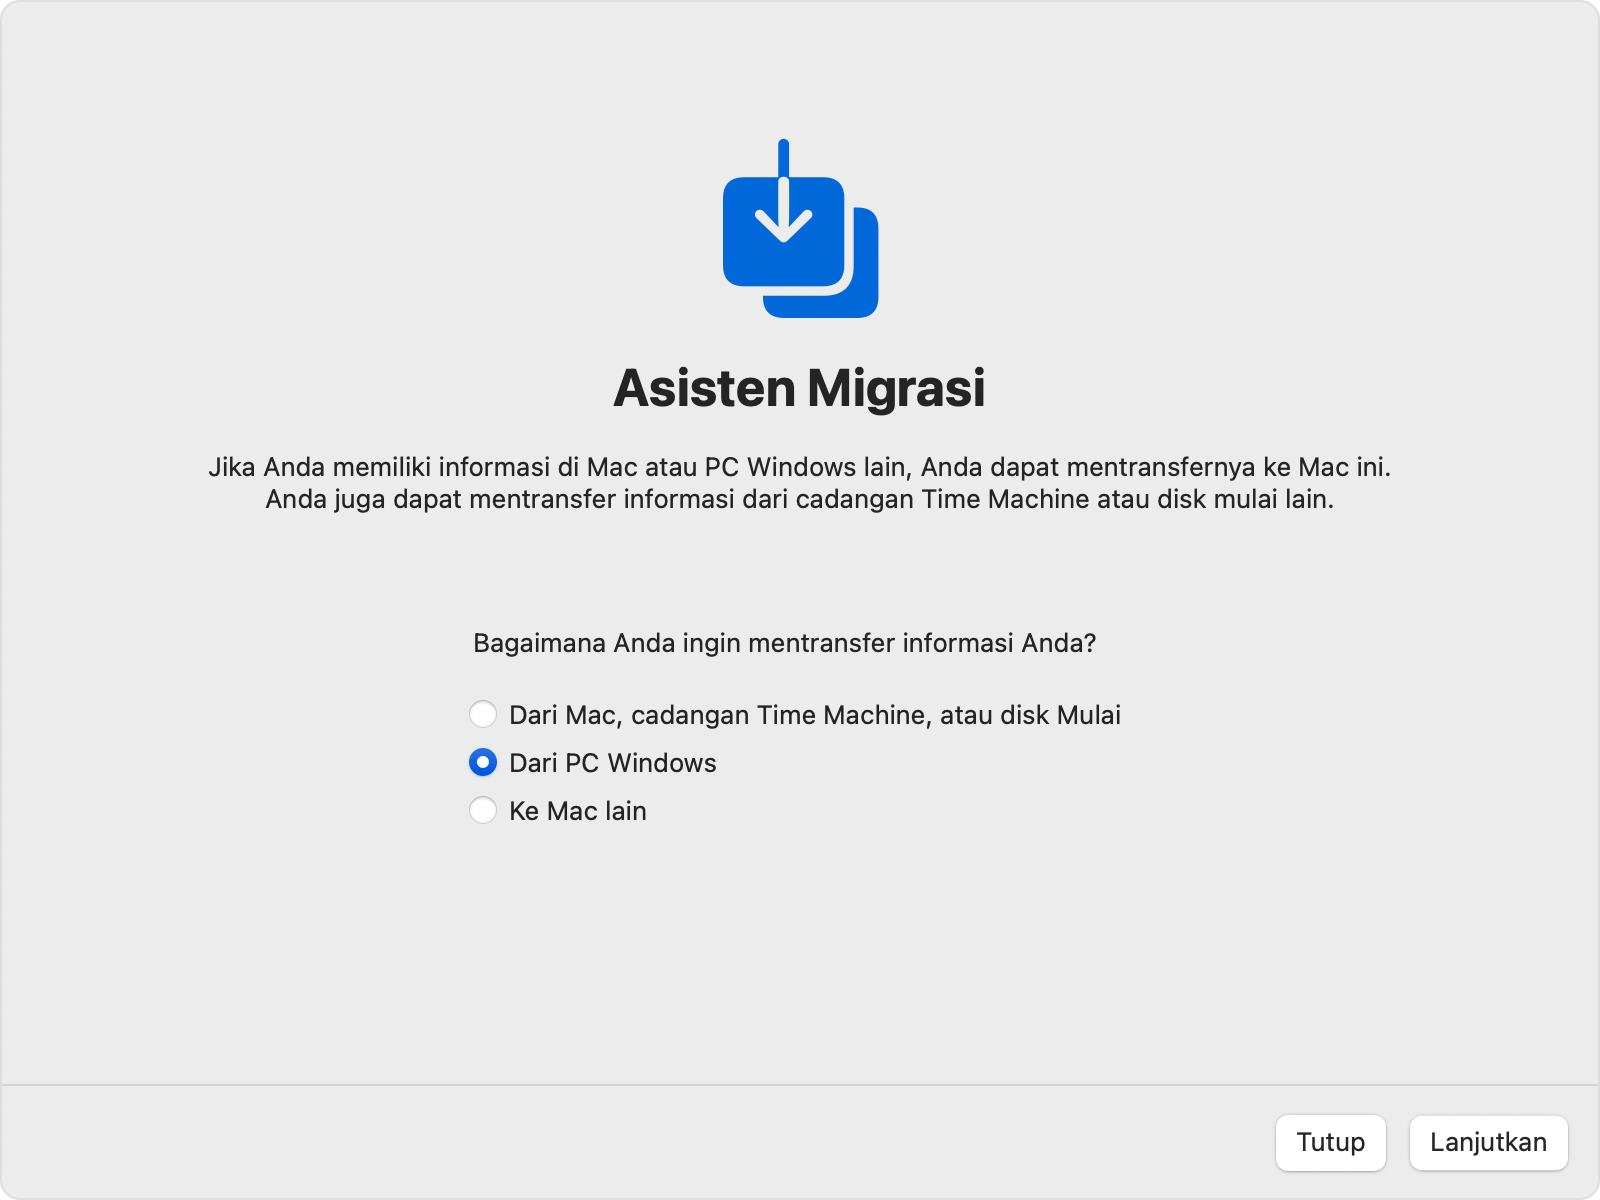 Asisten Migrasi di Mac: Transfer “Dari PC Windows”